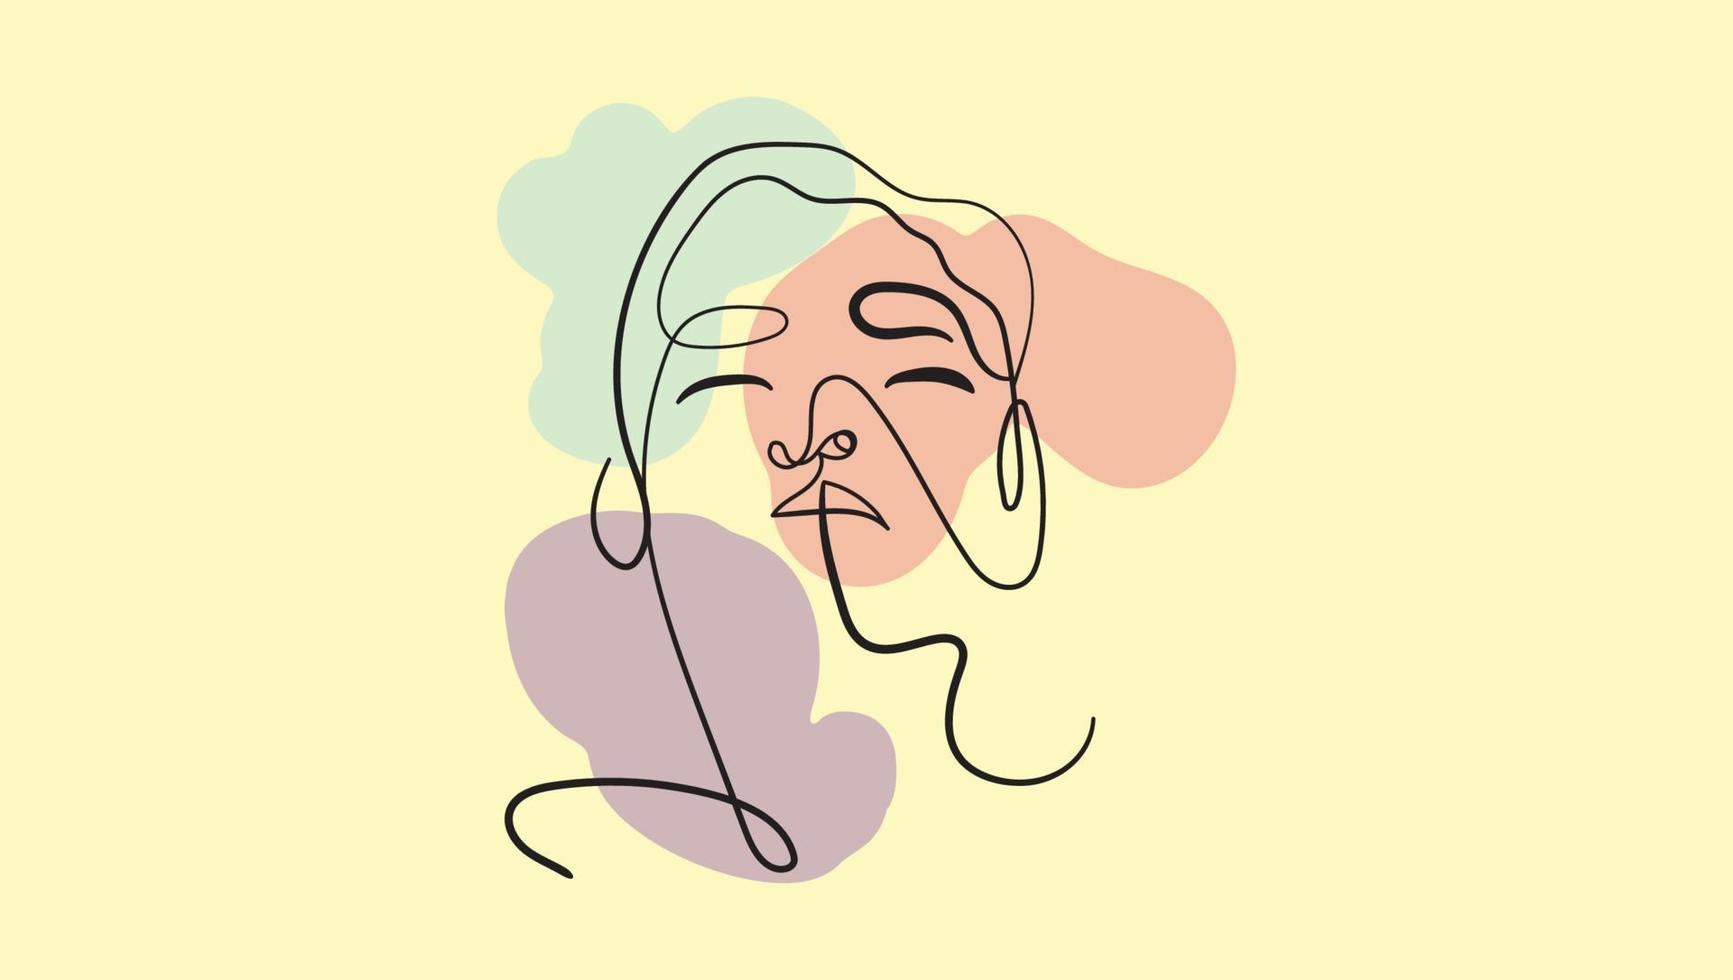 uma representação desenhada à mão simples, mas marcante, do rosto de uma mulher na forma de uma linha única e ininterrupta em um fundo geométrico abstrato impressão de parede boho impressão digital vetor